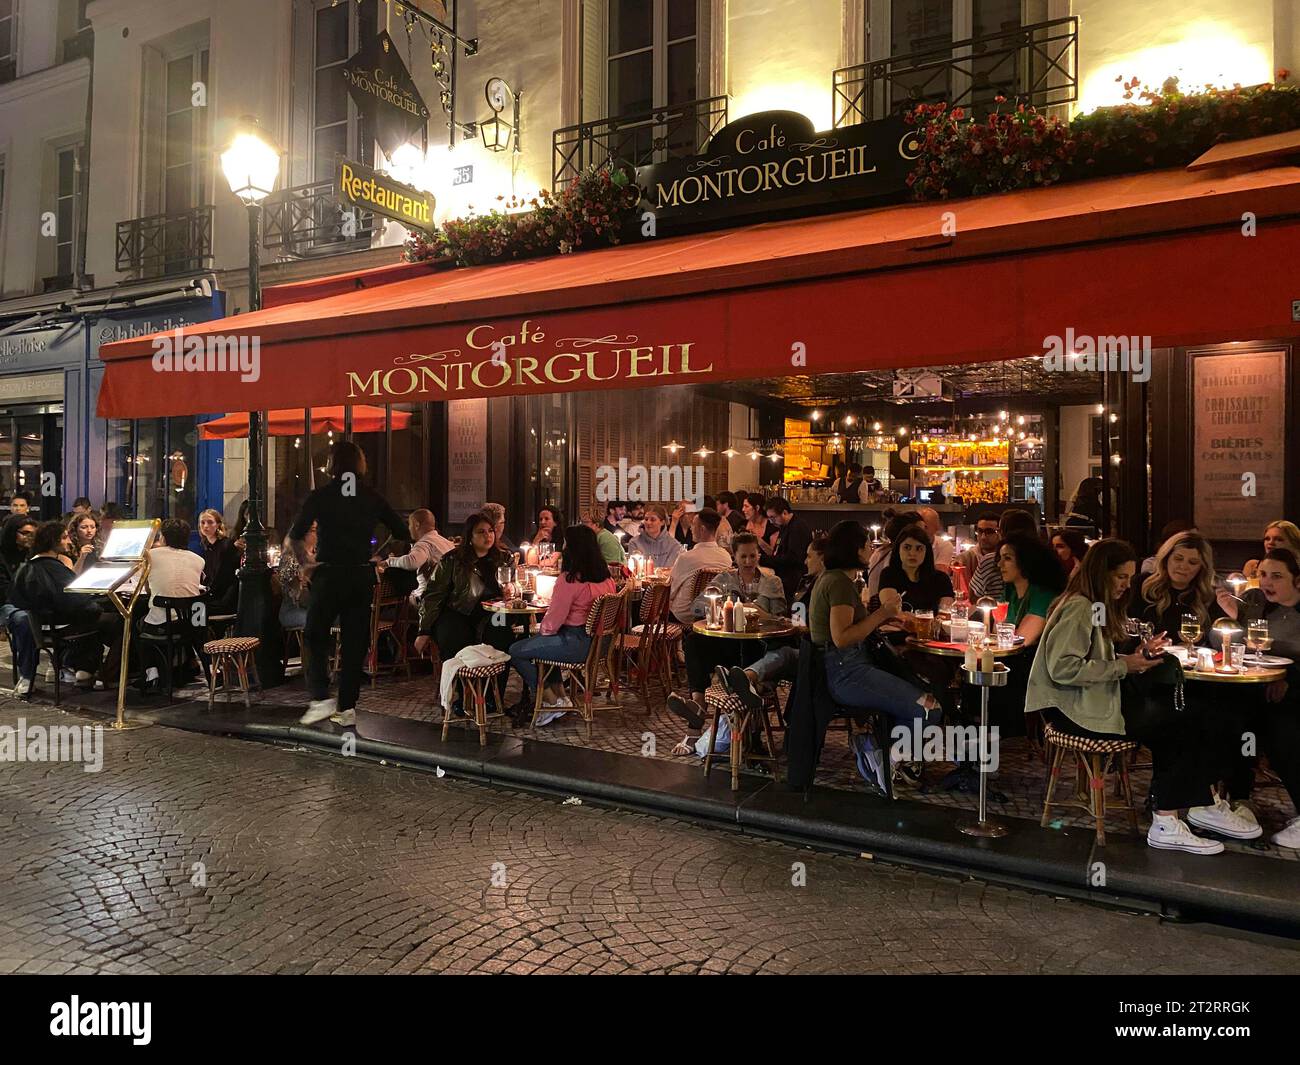 Personnes assises en extérieur, restaurant café Montogrueil, soirée, nuit, Paris, France Banque D'Images